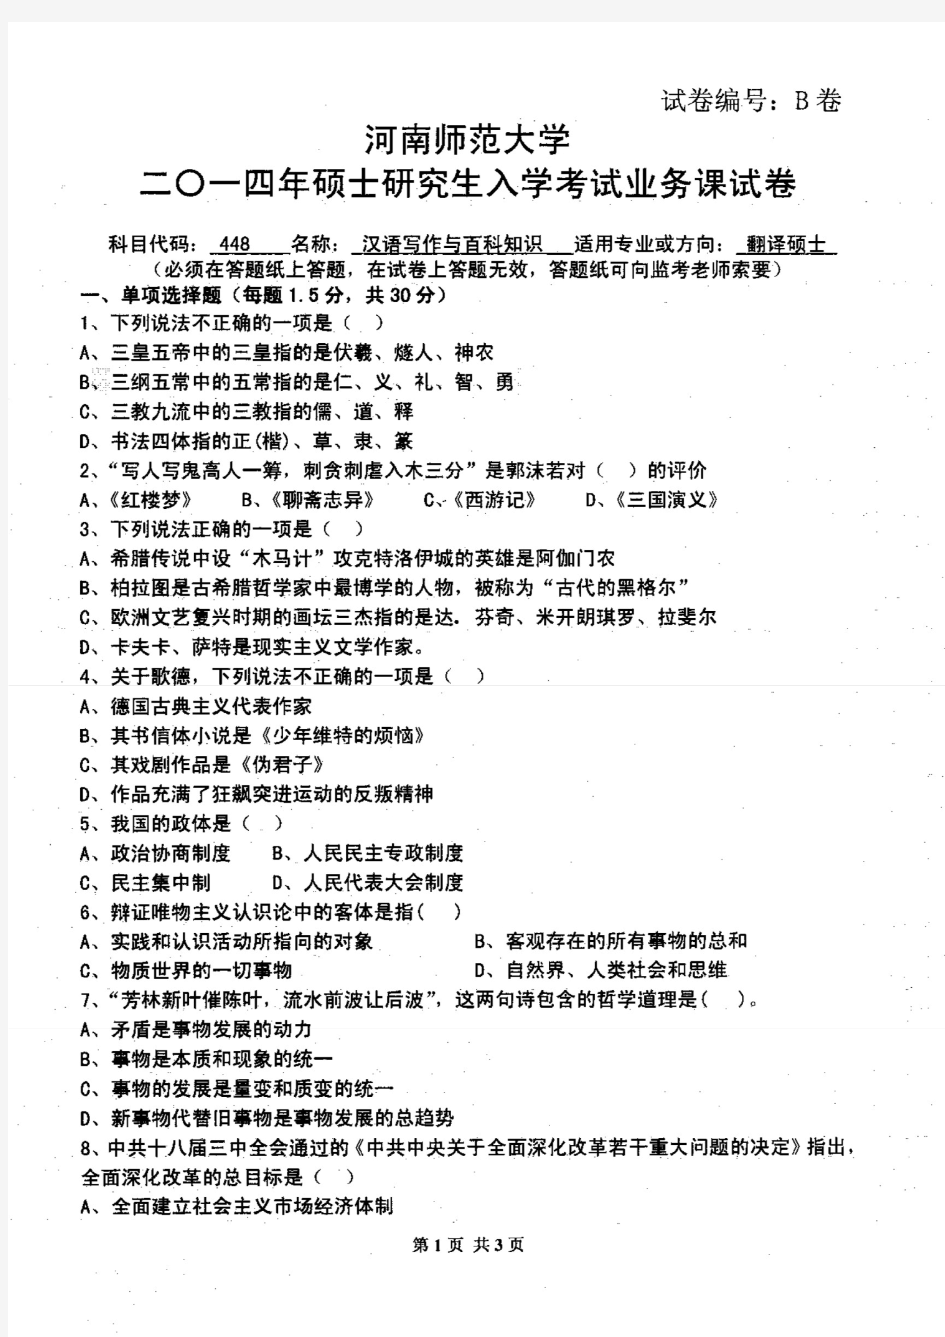 河南师范大学2014年《448汉语写作与百科知识》考研专业课真题试卷